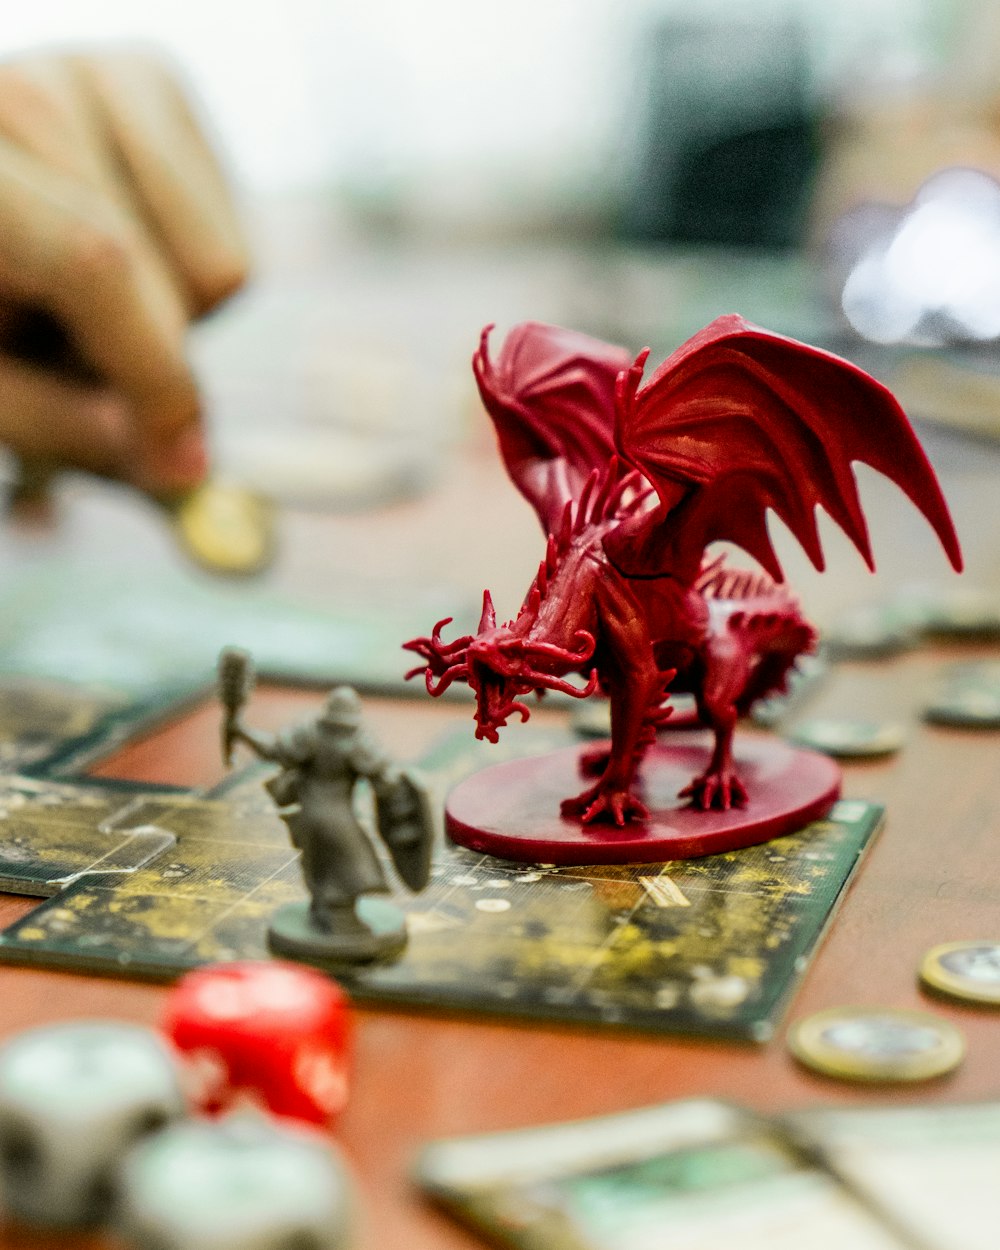 Figura de acción del dragón rojo sobre la mesa